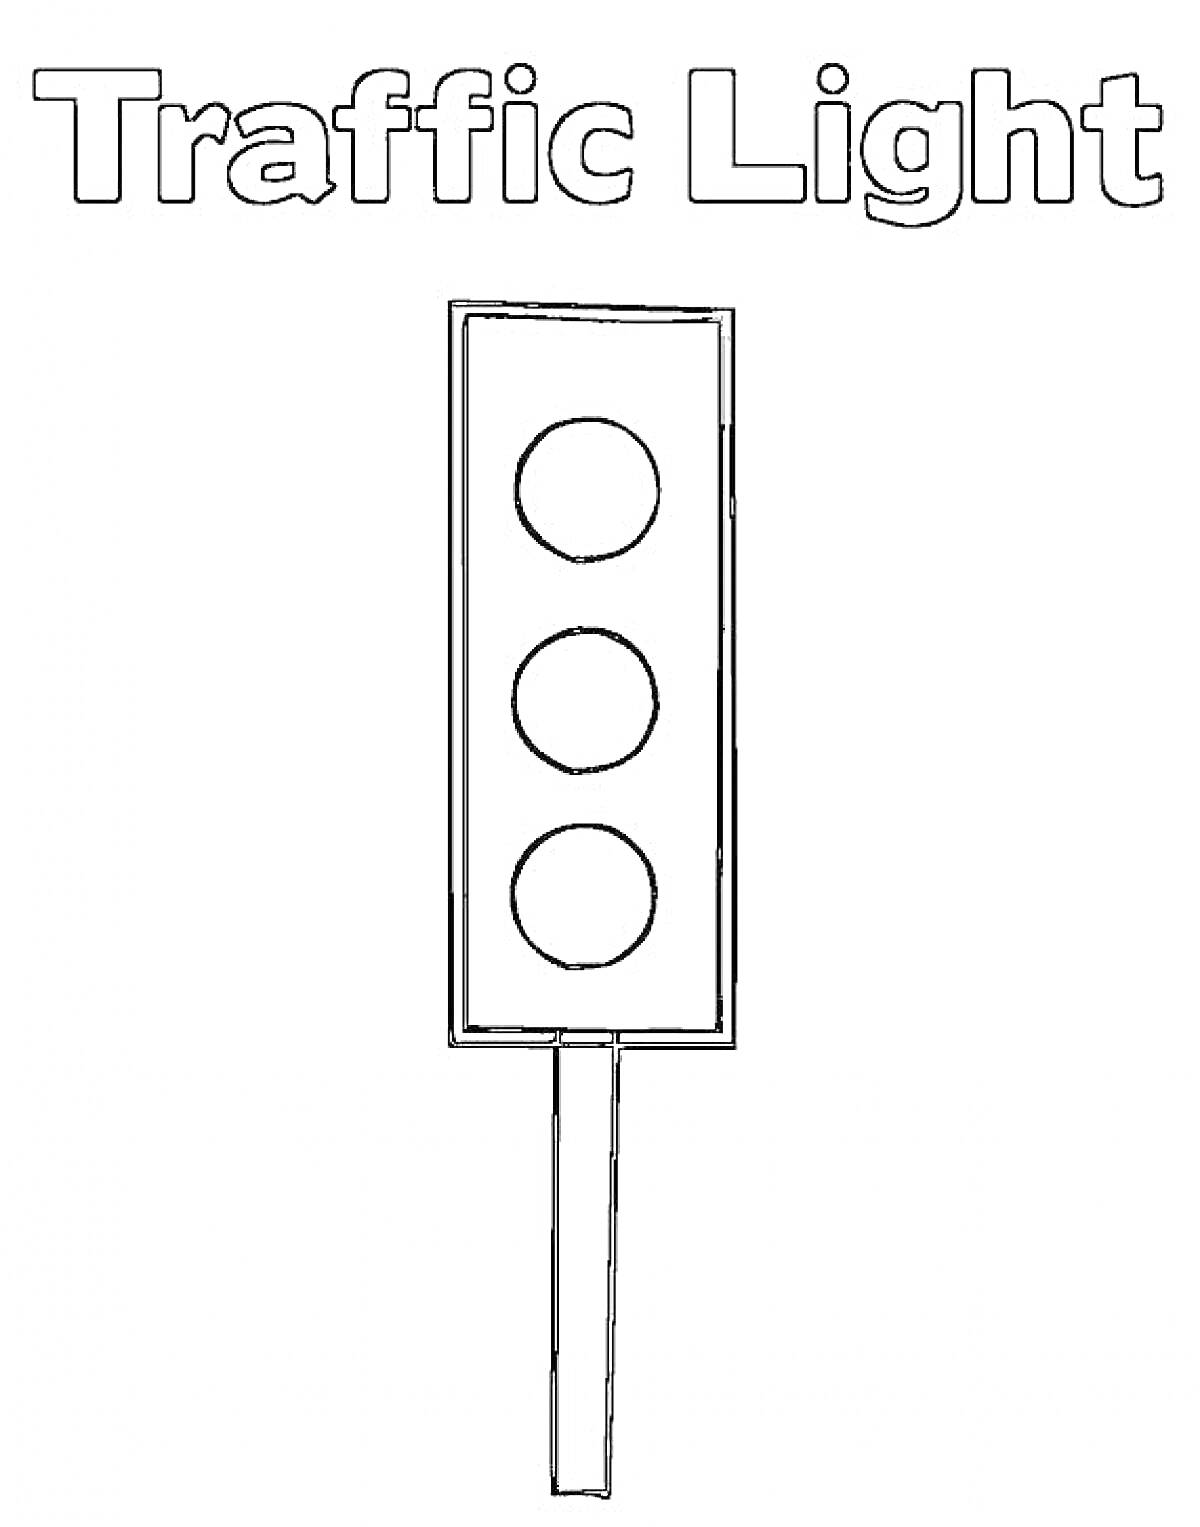 Раскраска Светофор с надписью Traffic Light, три световых индикатора и столб